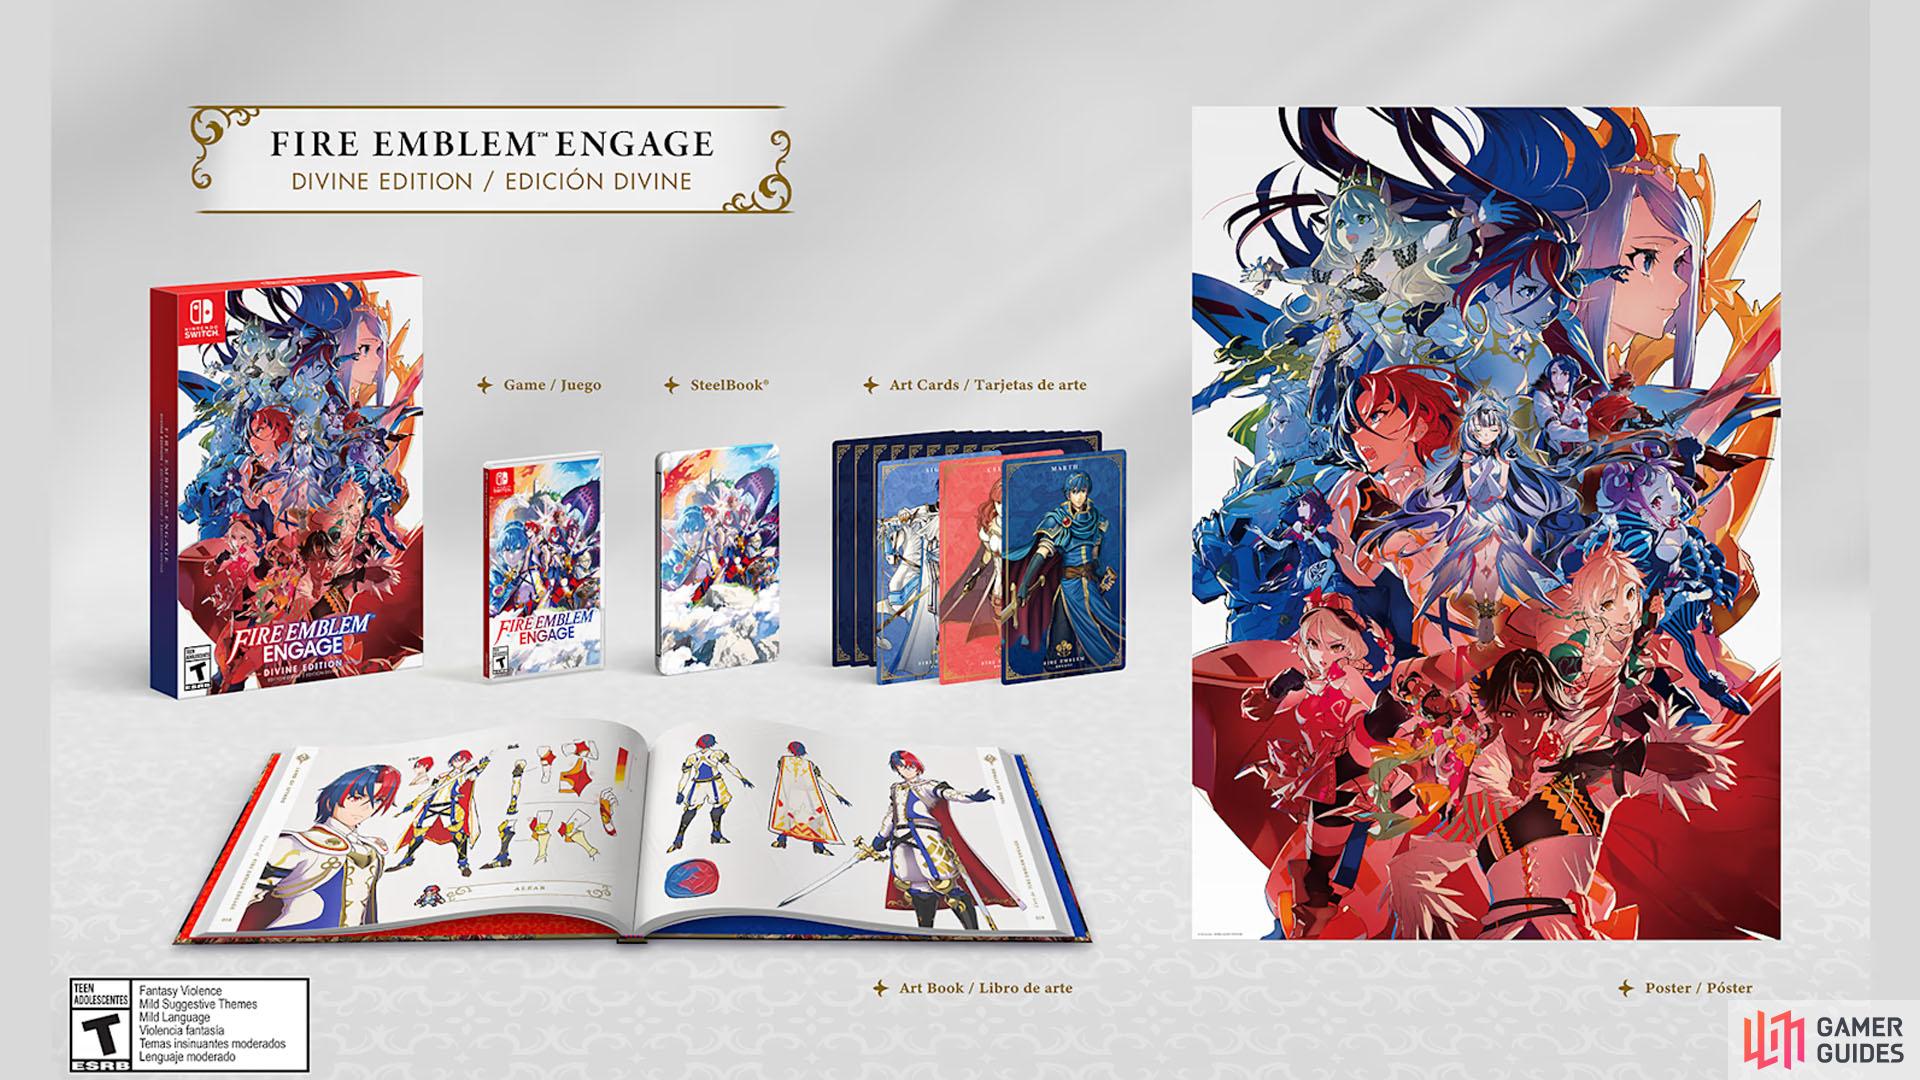 !Fire Emblem Engage Divine Edition contents